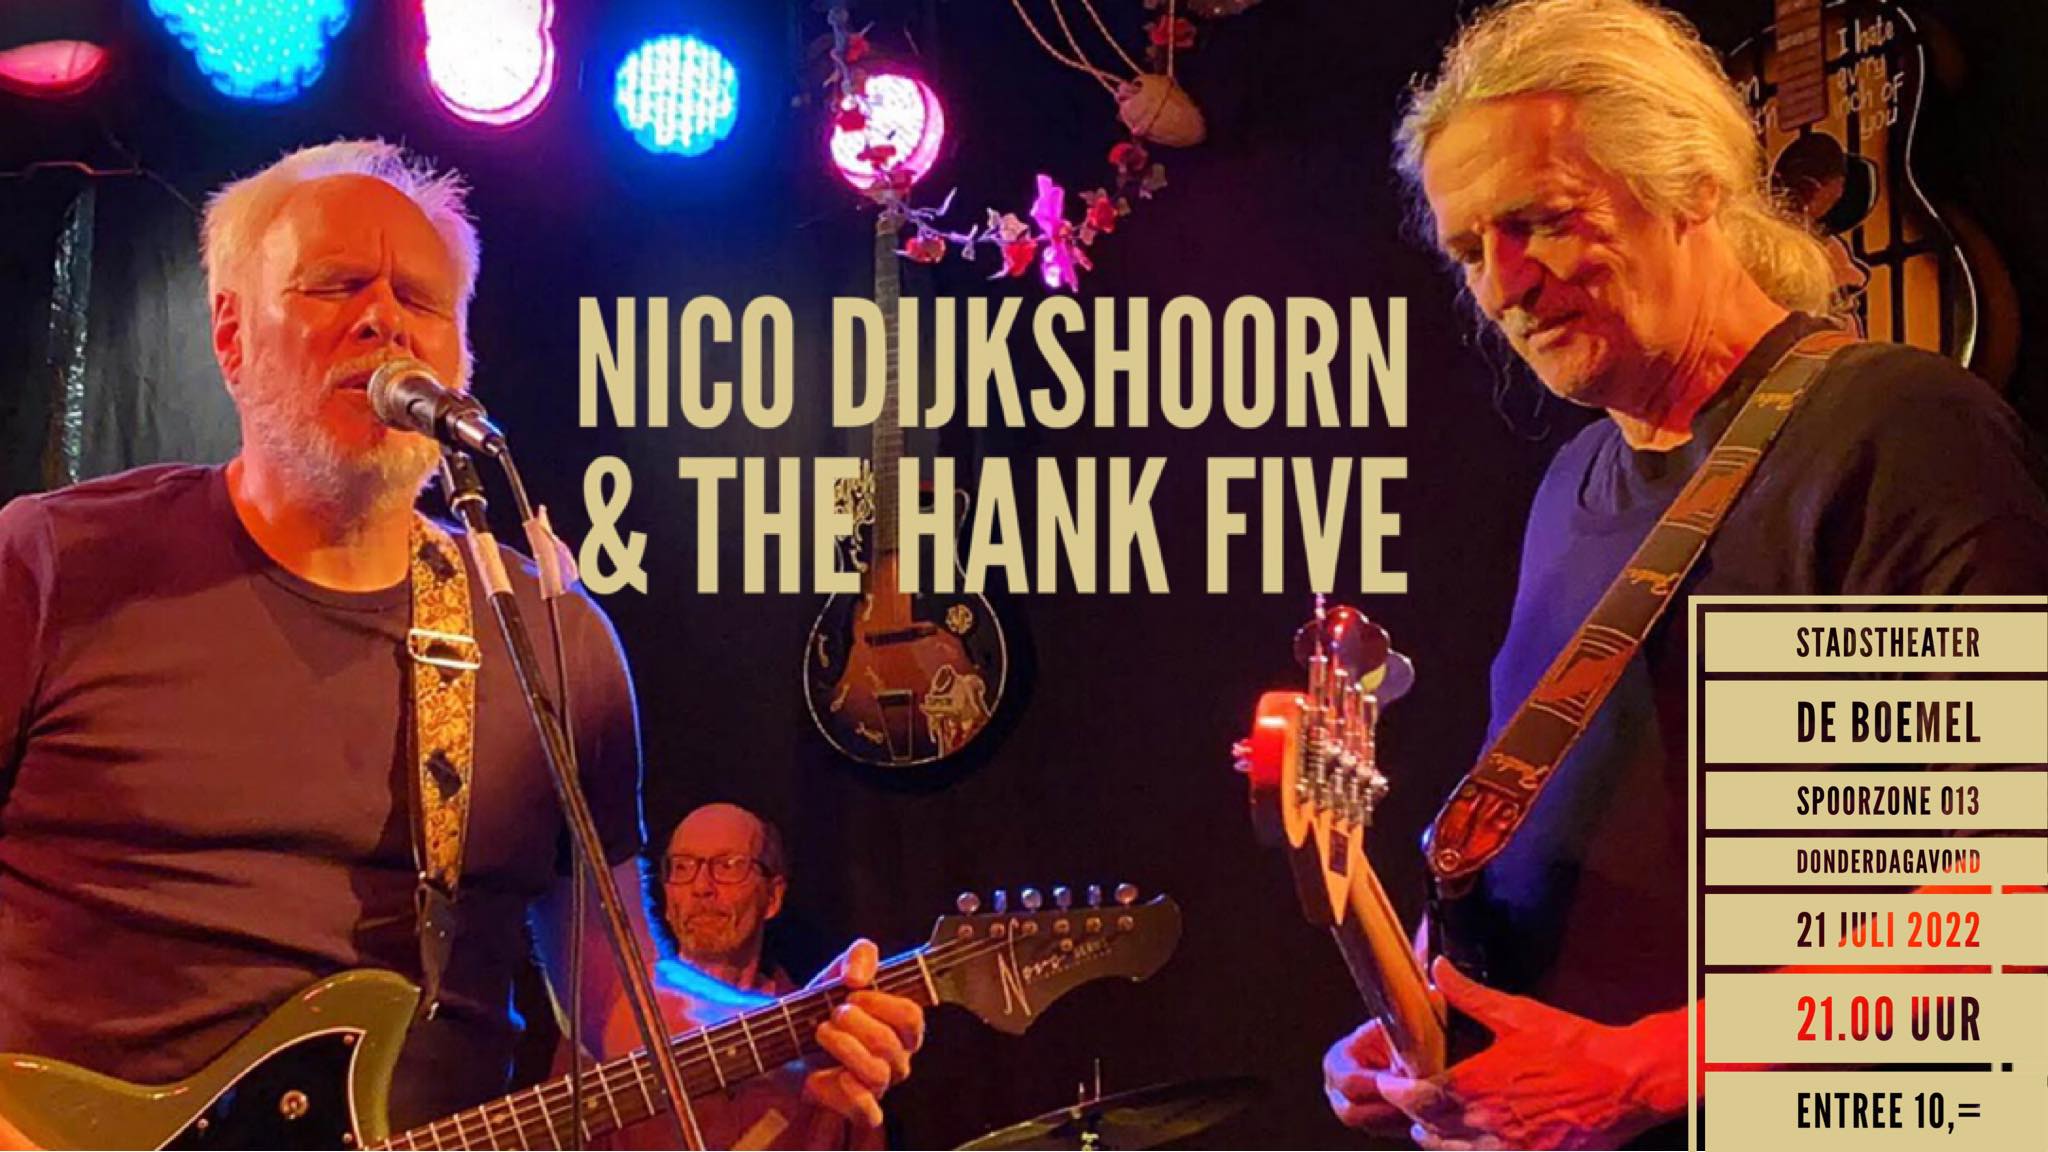 NICO DIJKSHOORN & THE HANK FIVE